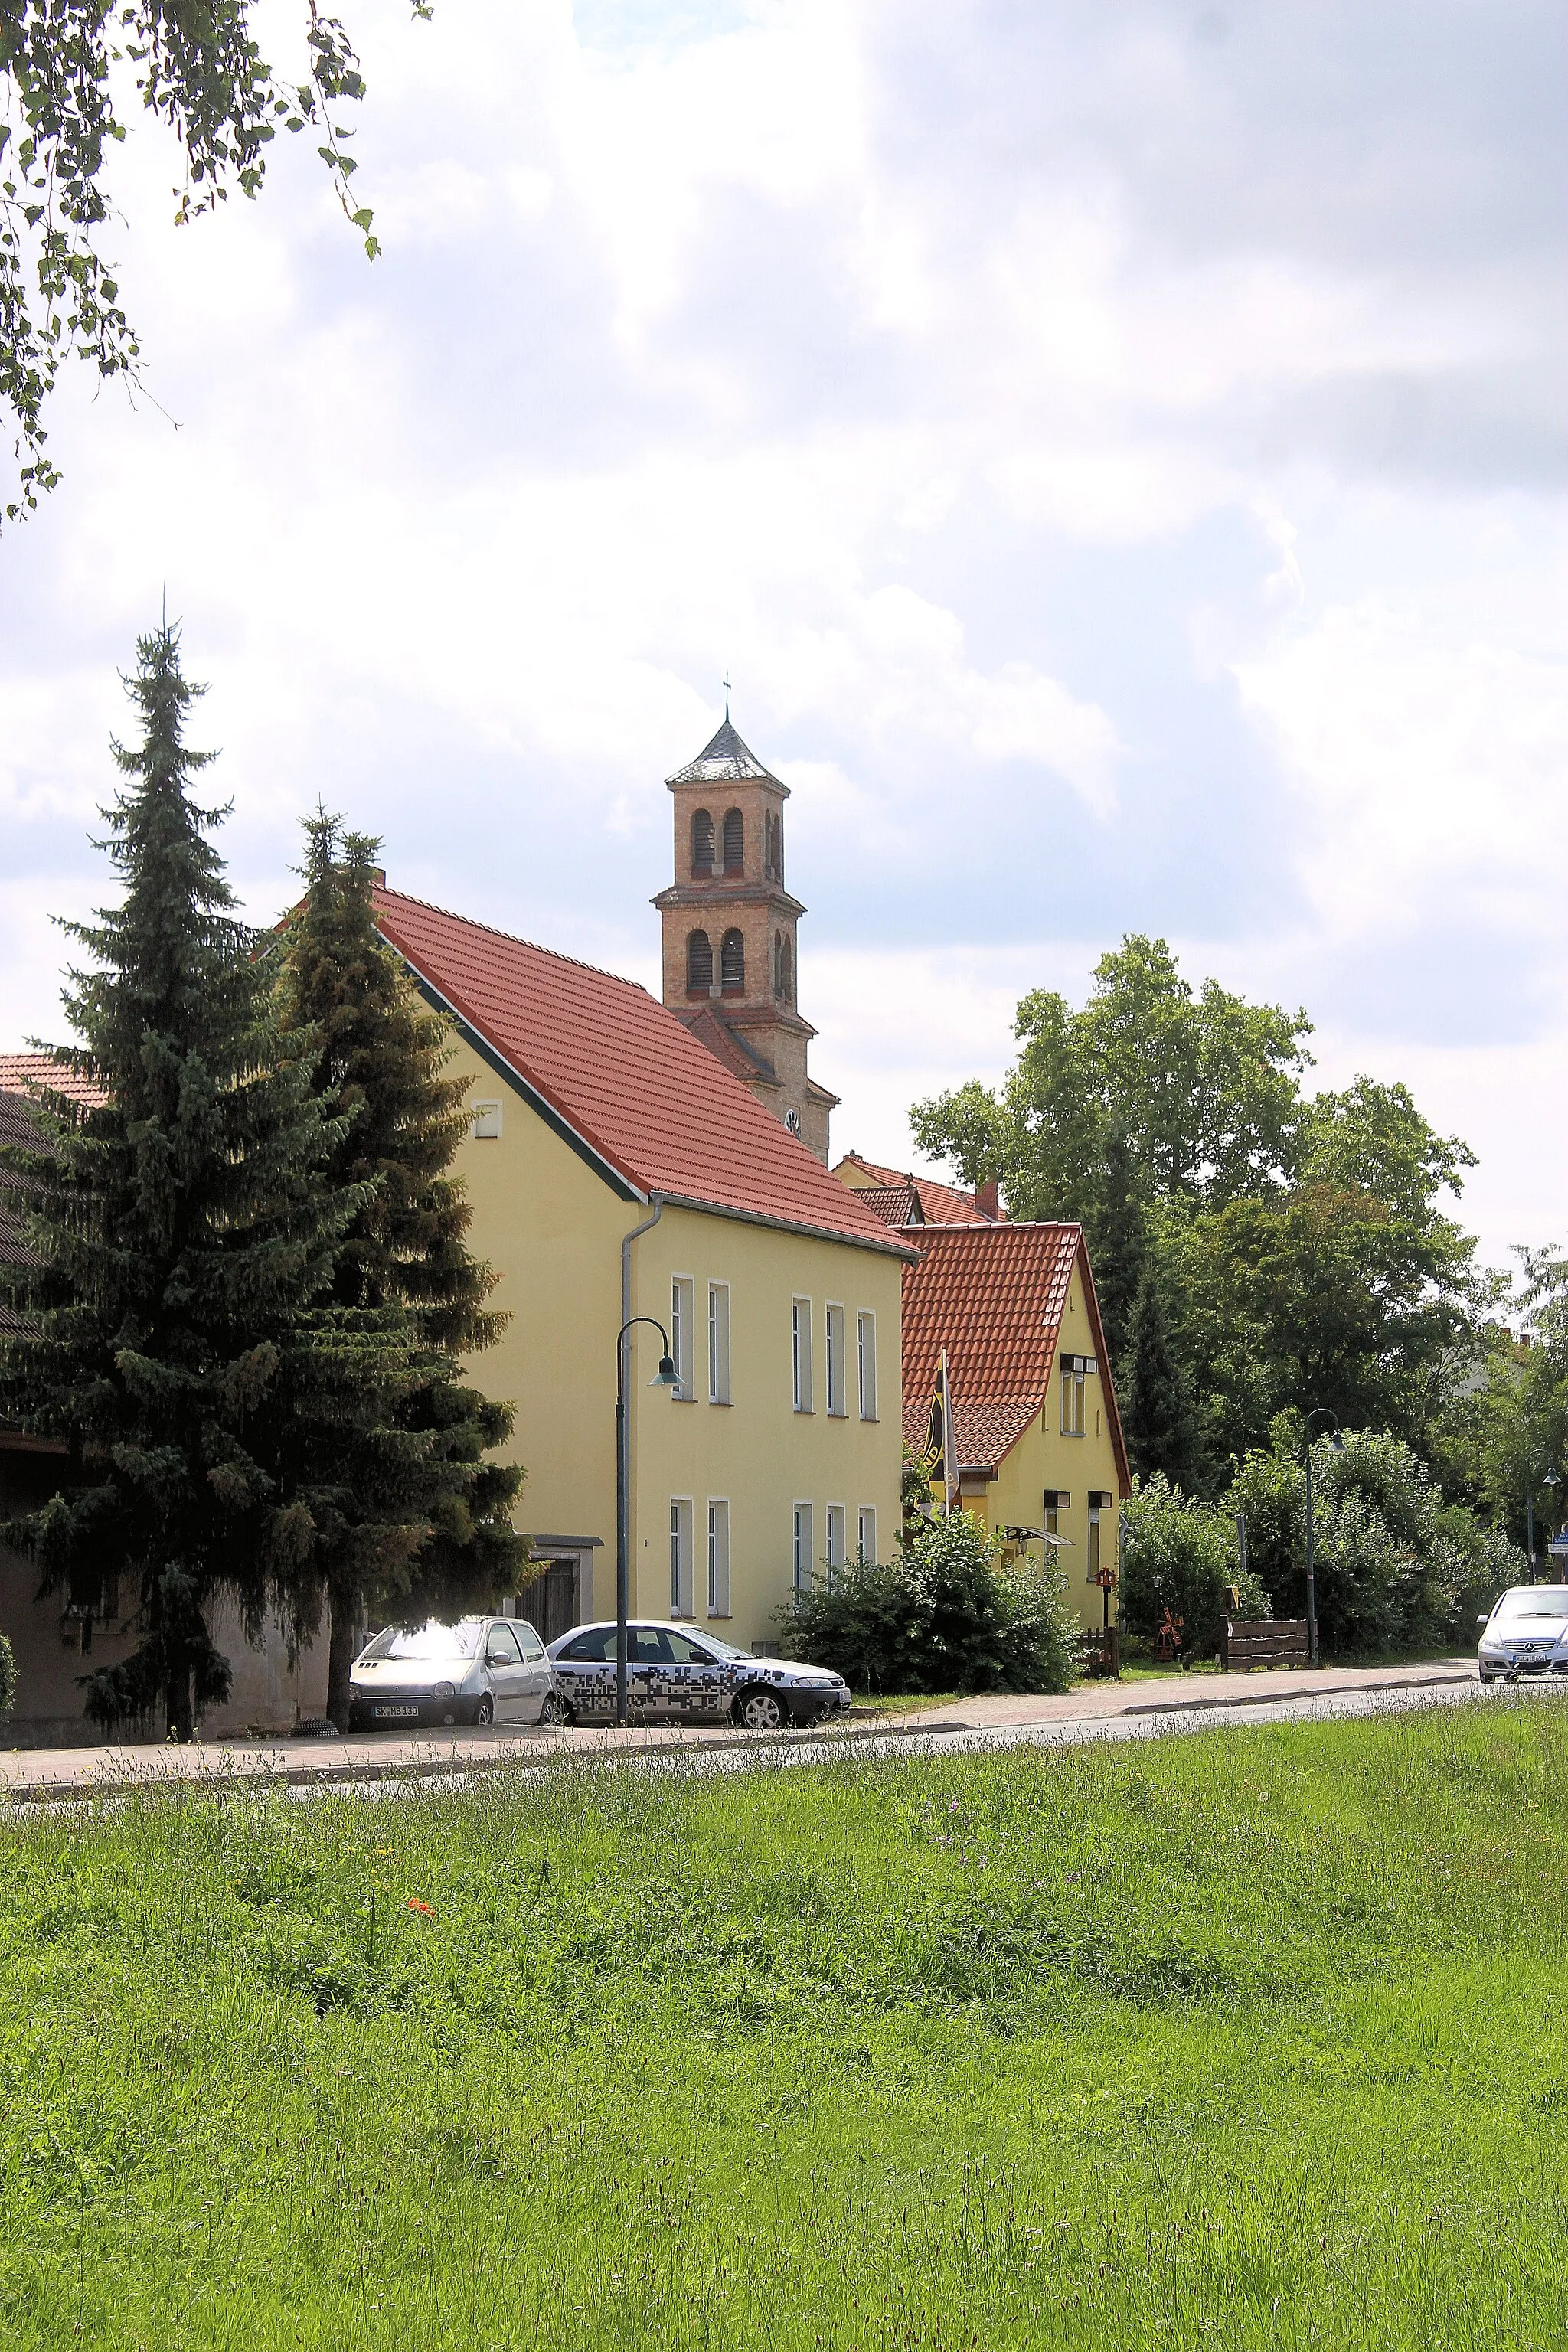 Photo showing: Salzmünde, the Straße der Einheit